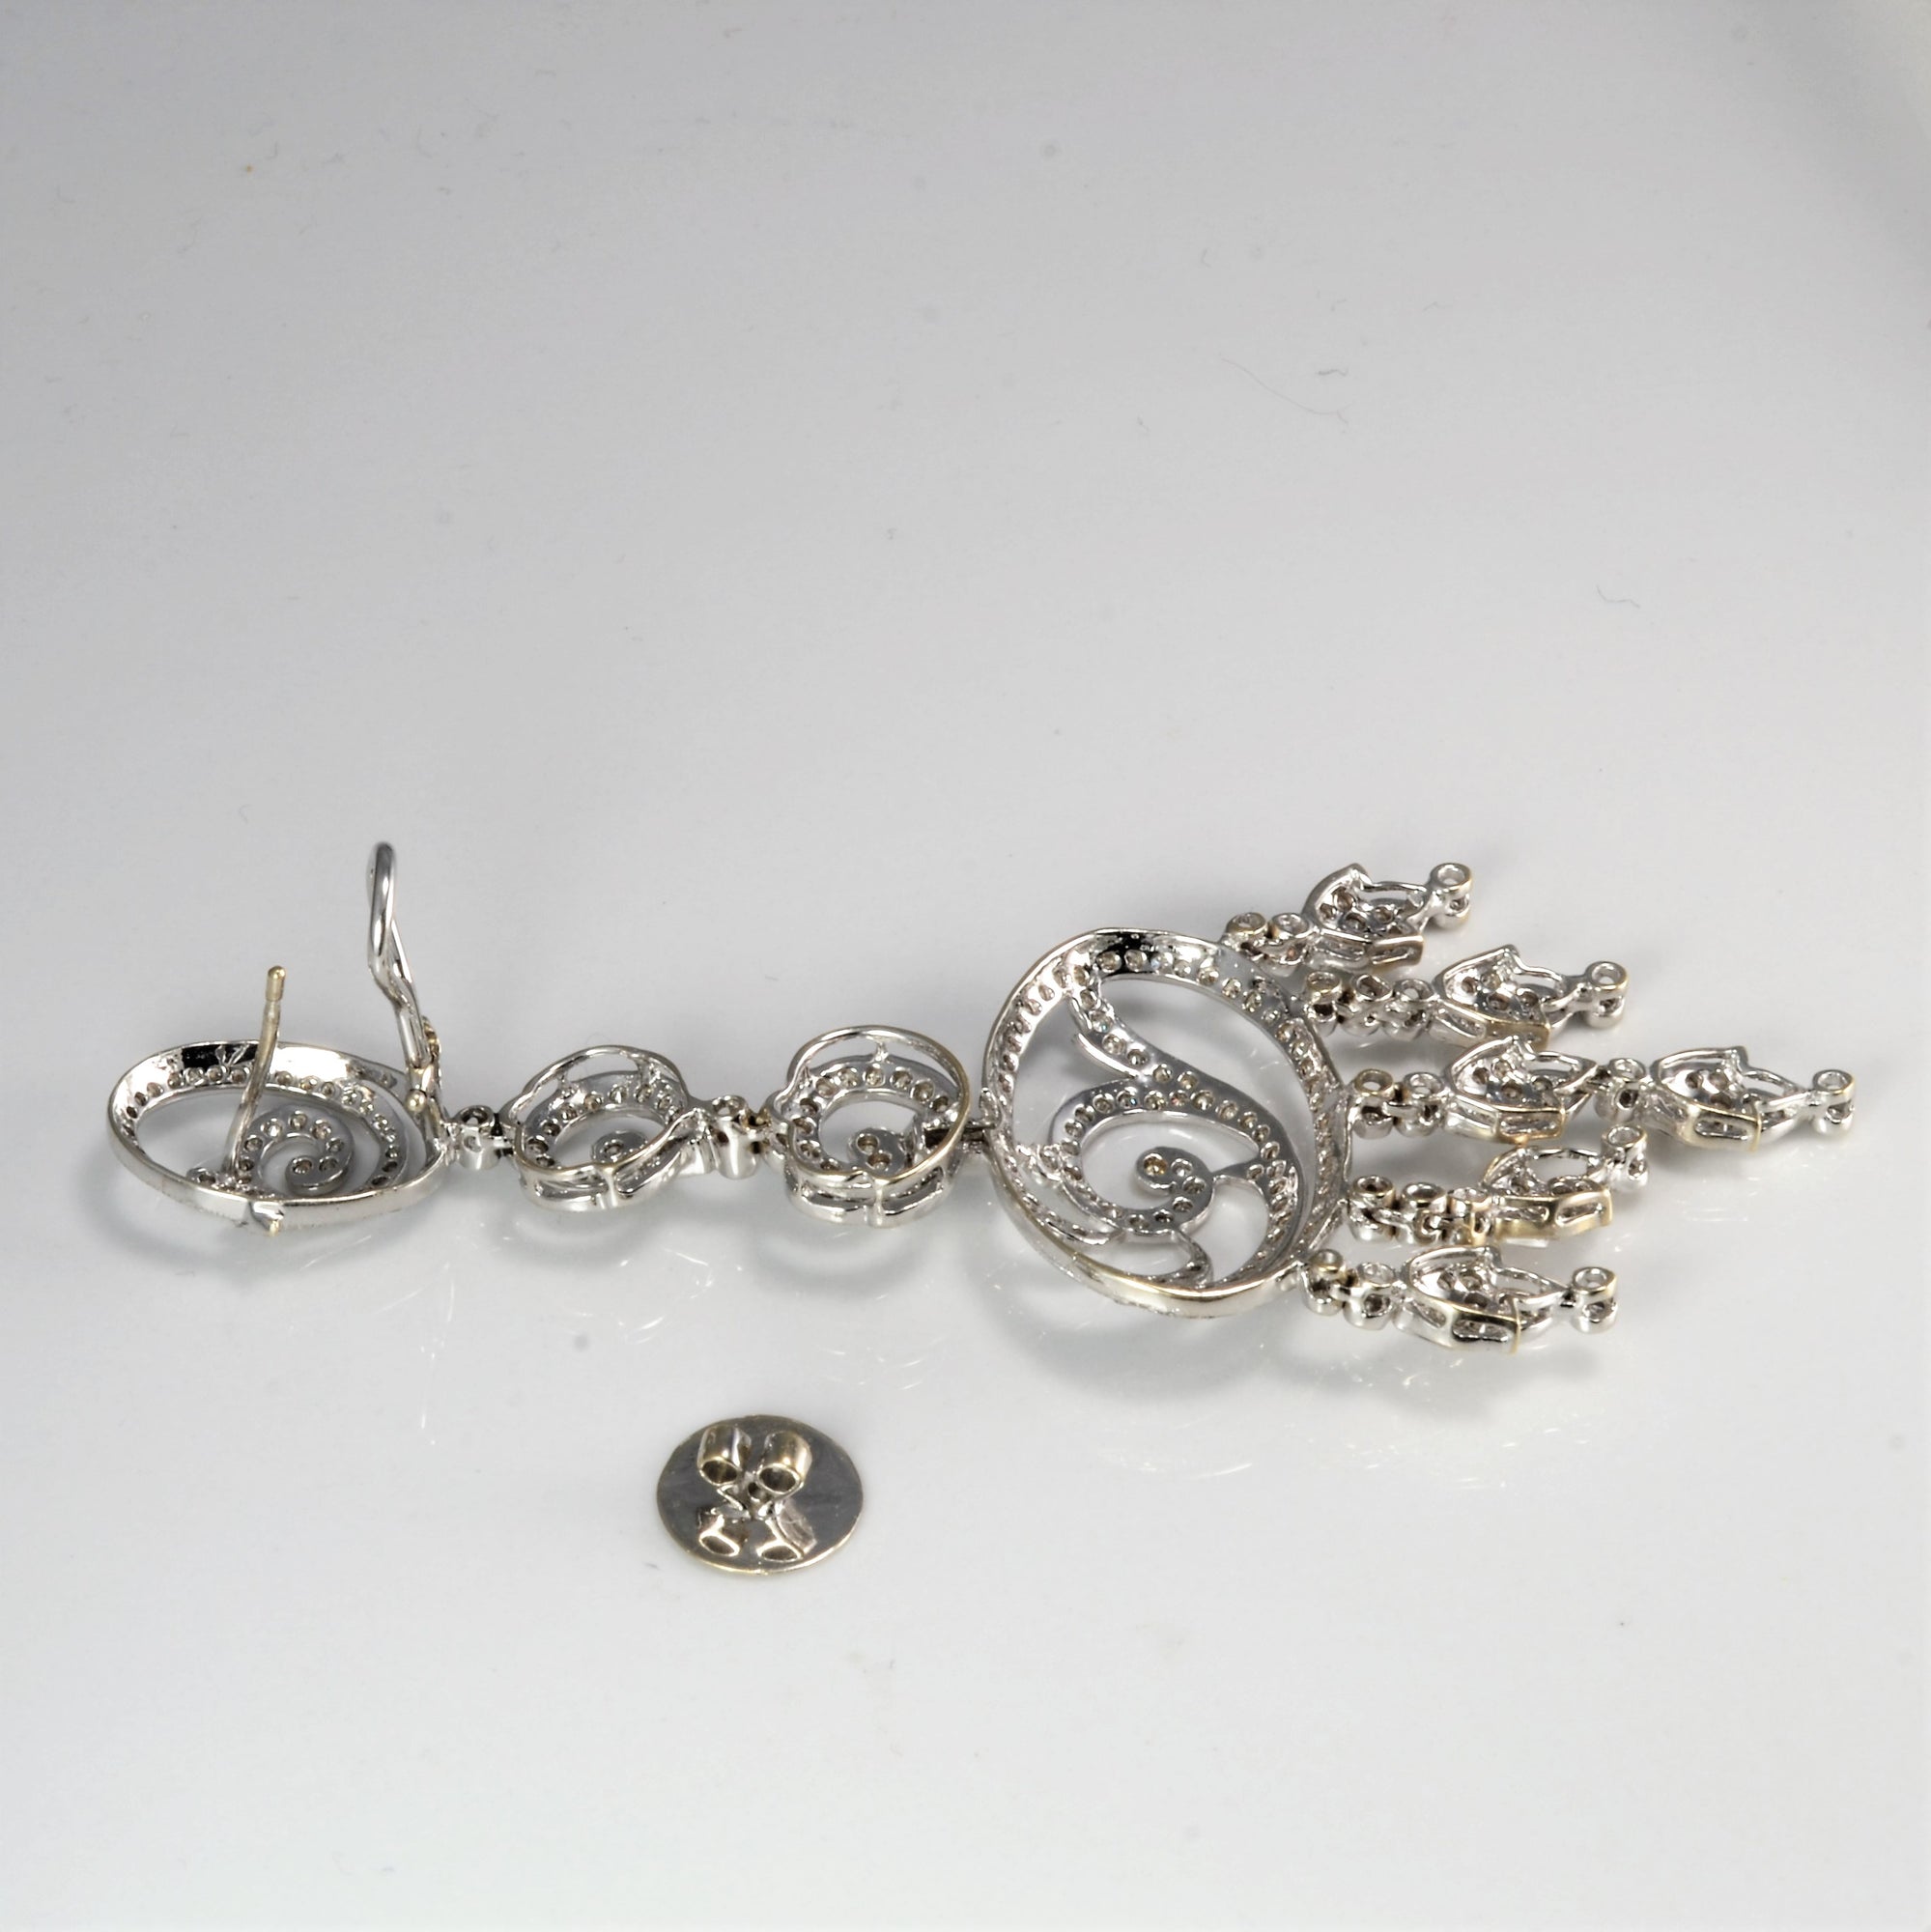 Diamond Chandelier Earrings | 6.15 ctw |